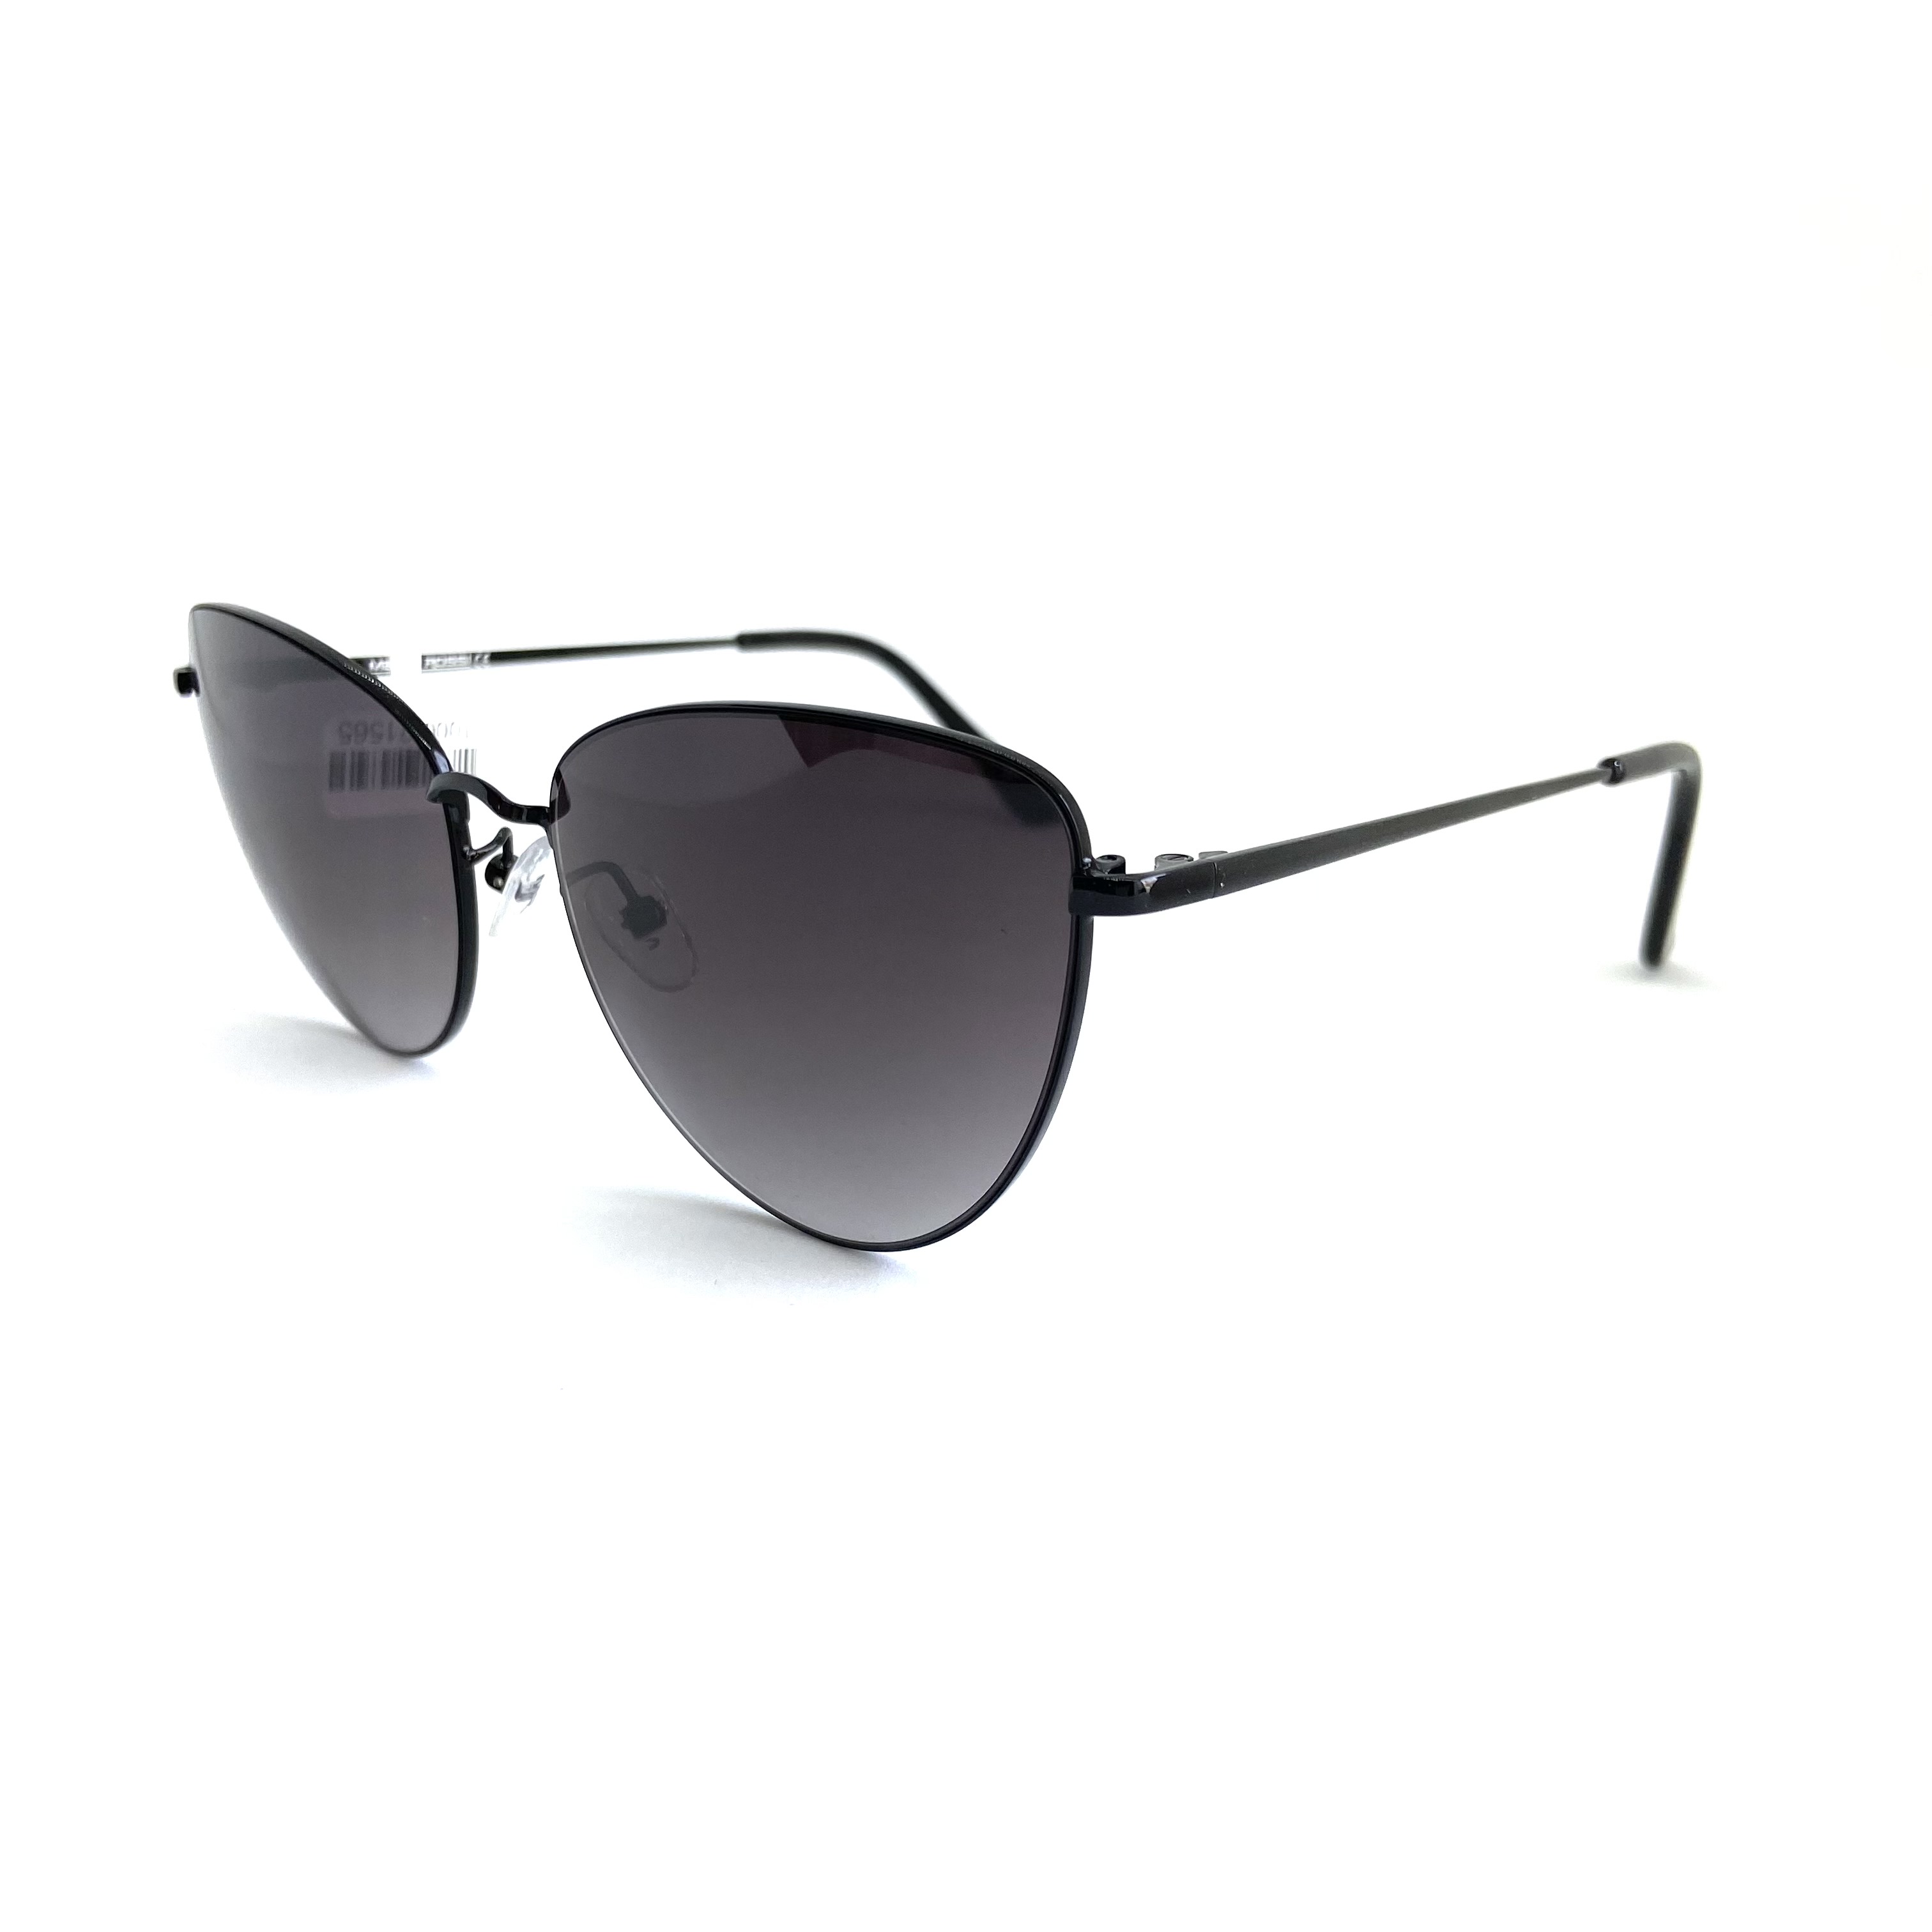 Солнцезащитные очки Mario Rossi модель 02 036